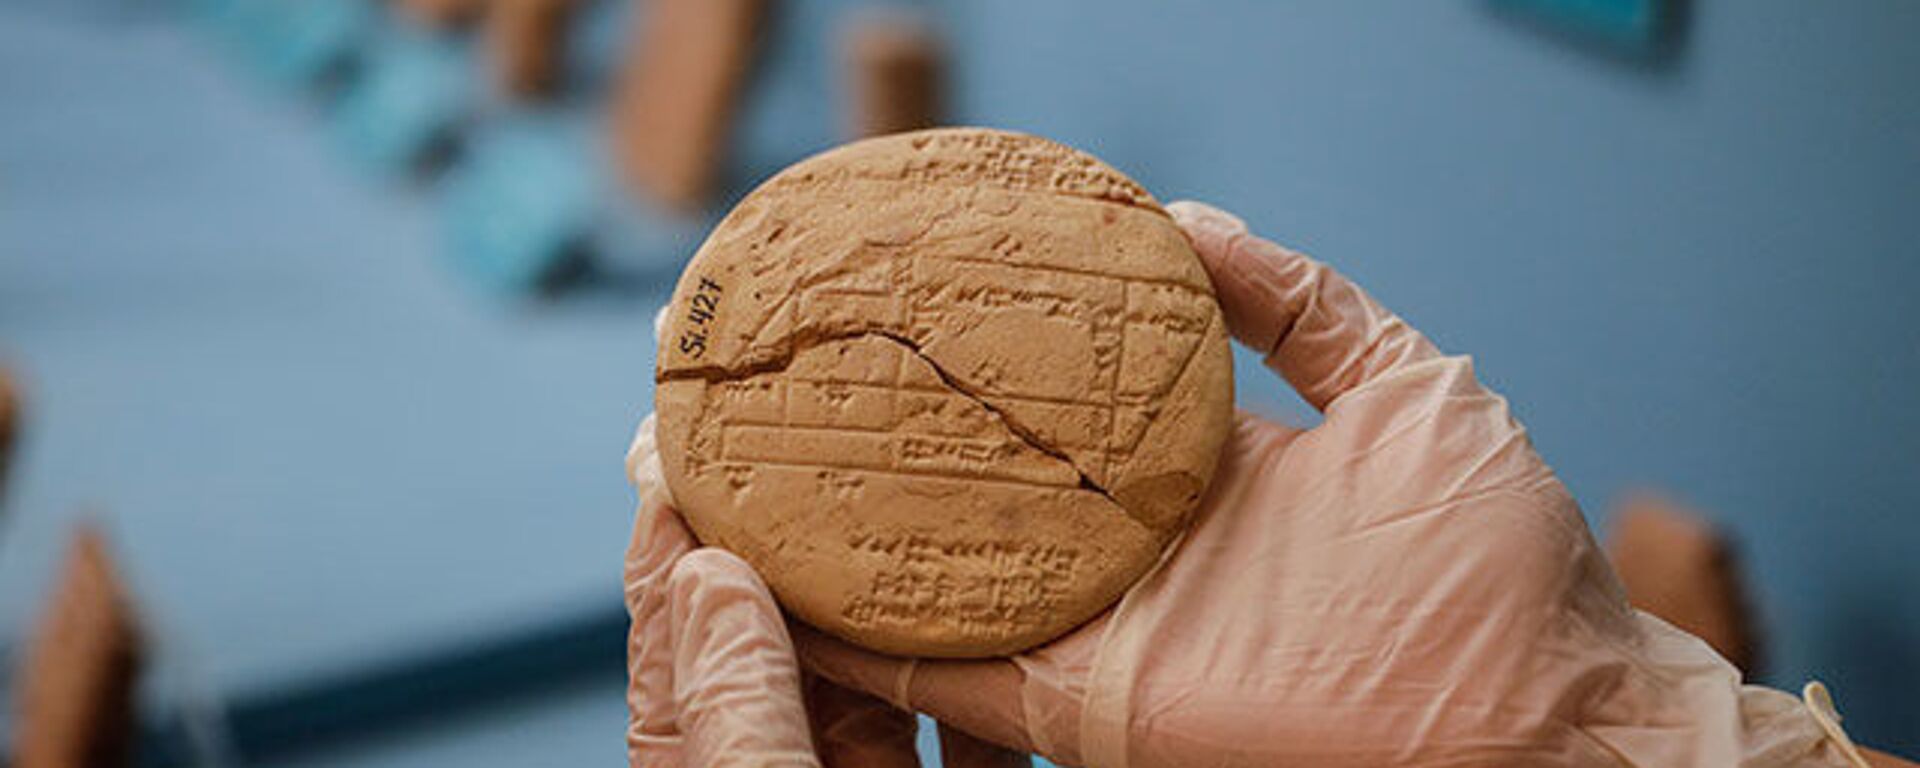 İstanbul Arkeoloji Müzesi'nde bulunan 3 bin 700 yıllık tabletin üzerinde matematiksel işlemler keşfedildi - Sputnik Türkiye, 1920, 23.07.2022